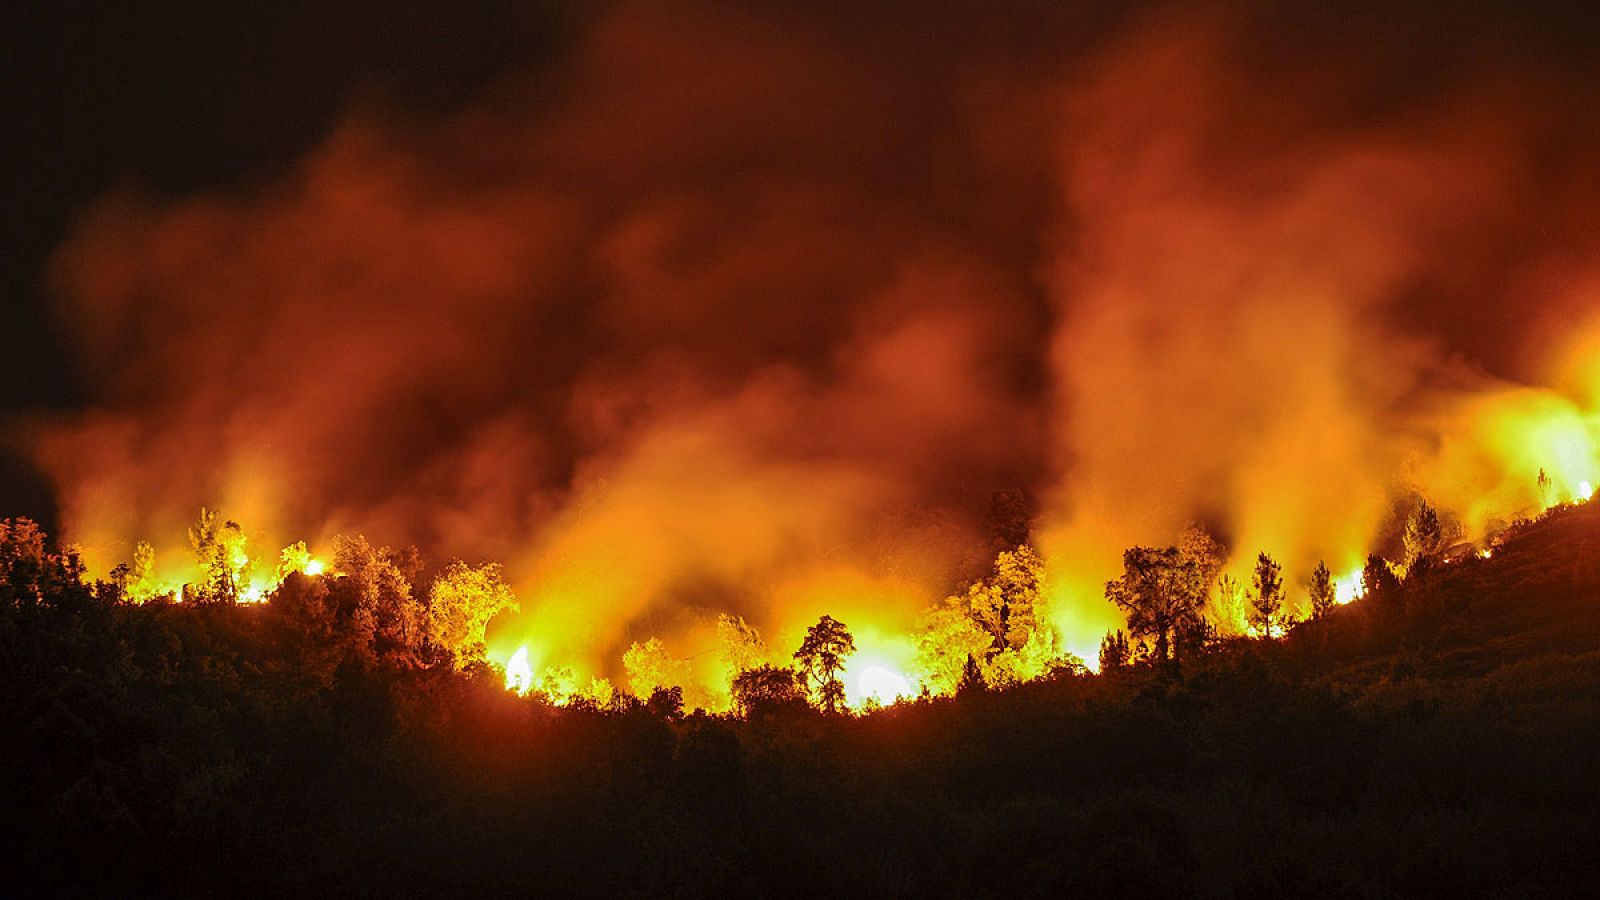 Vista del incendio forestal registrado en las afueras de la ciudad de Ourense